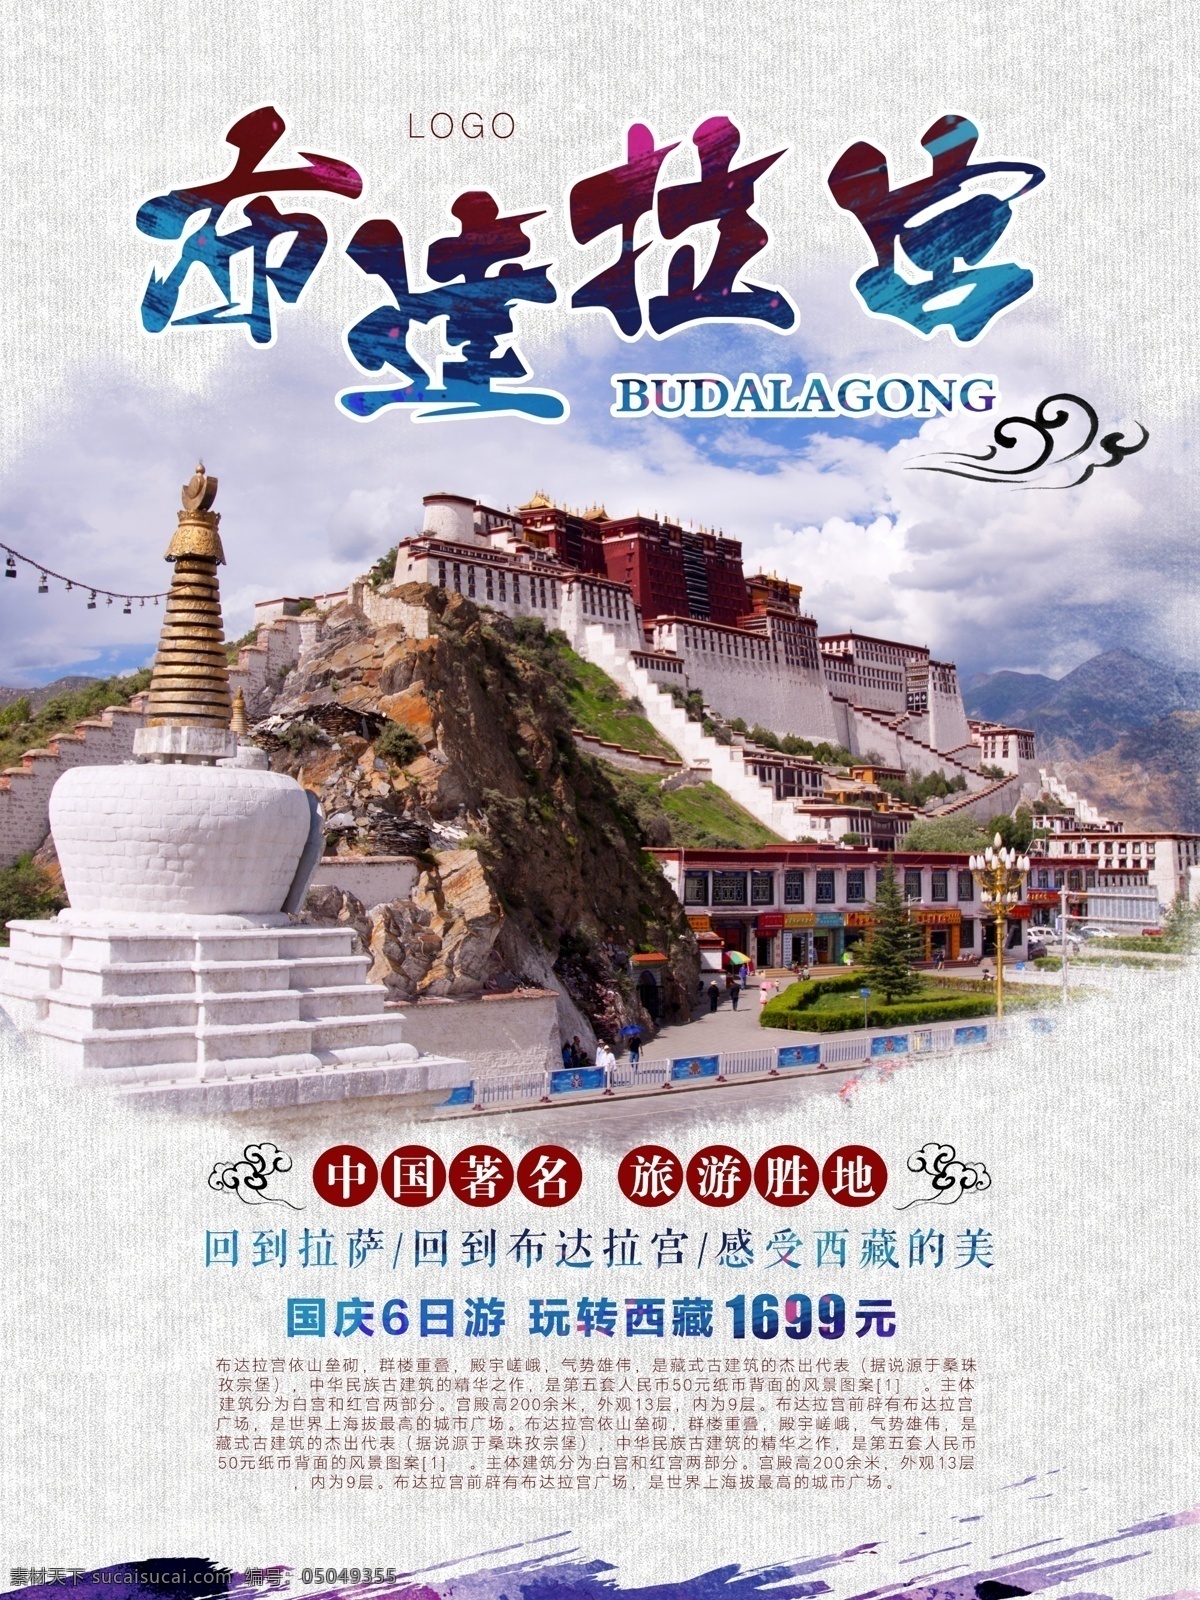 布达拉宫 旅游 西藏旅游 海报 布达拉宫旅游 西藏 旅游海报 国庆旅游 旅游胜地 玩转西藏 祥云 泼墨 字体设计